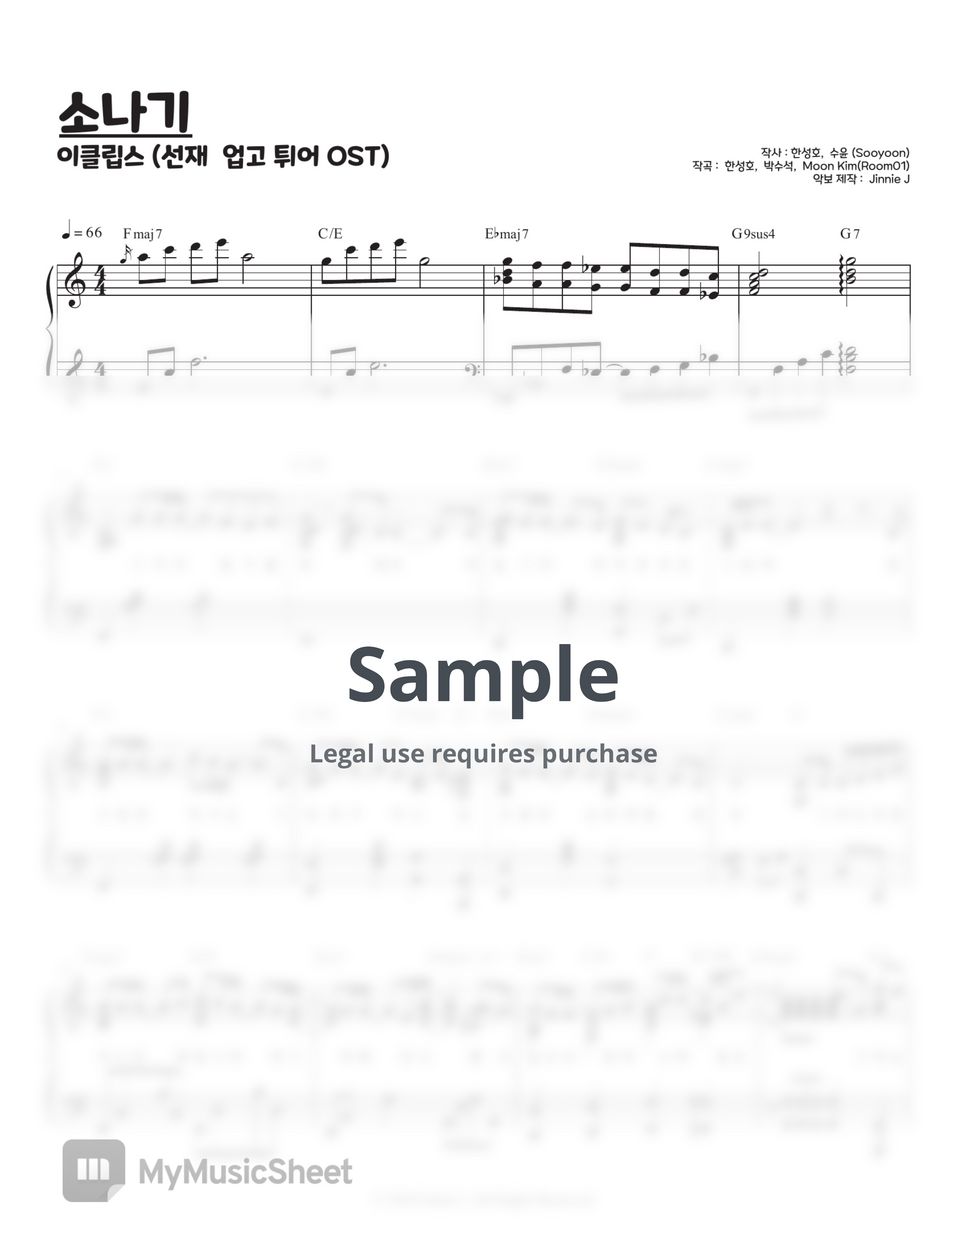 이클립스 - 소나기 (선재 업고 튀어 OST) by Jinnie J